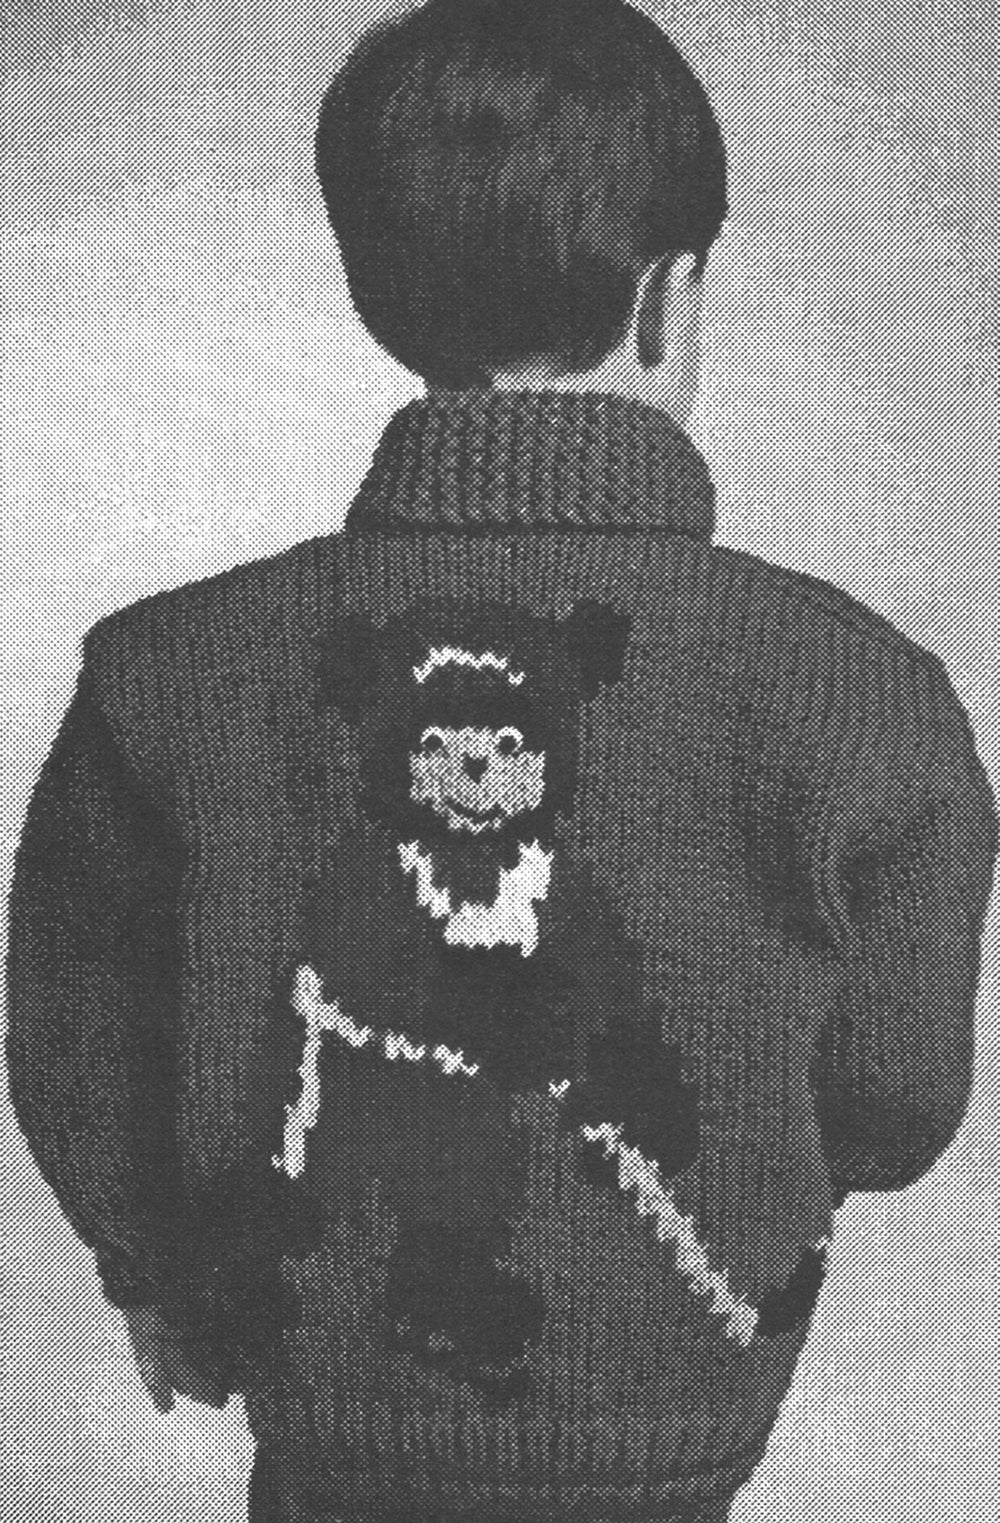 Hocky Bear Jacket Pattern